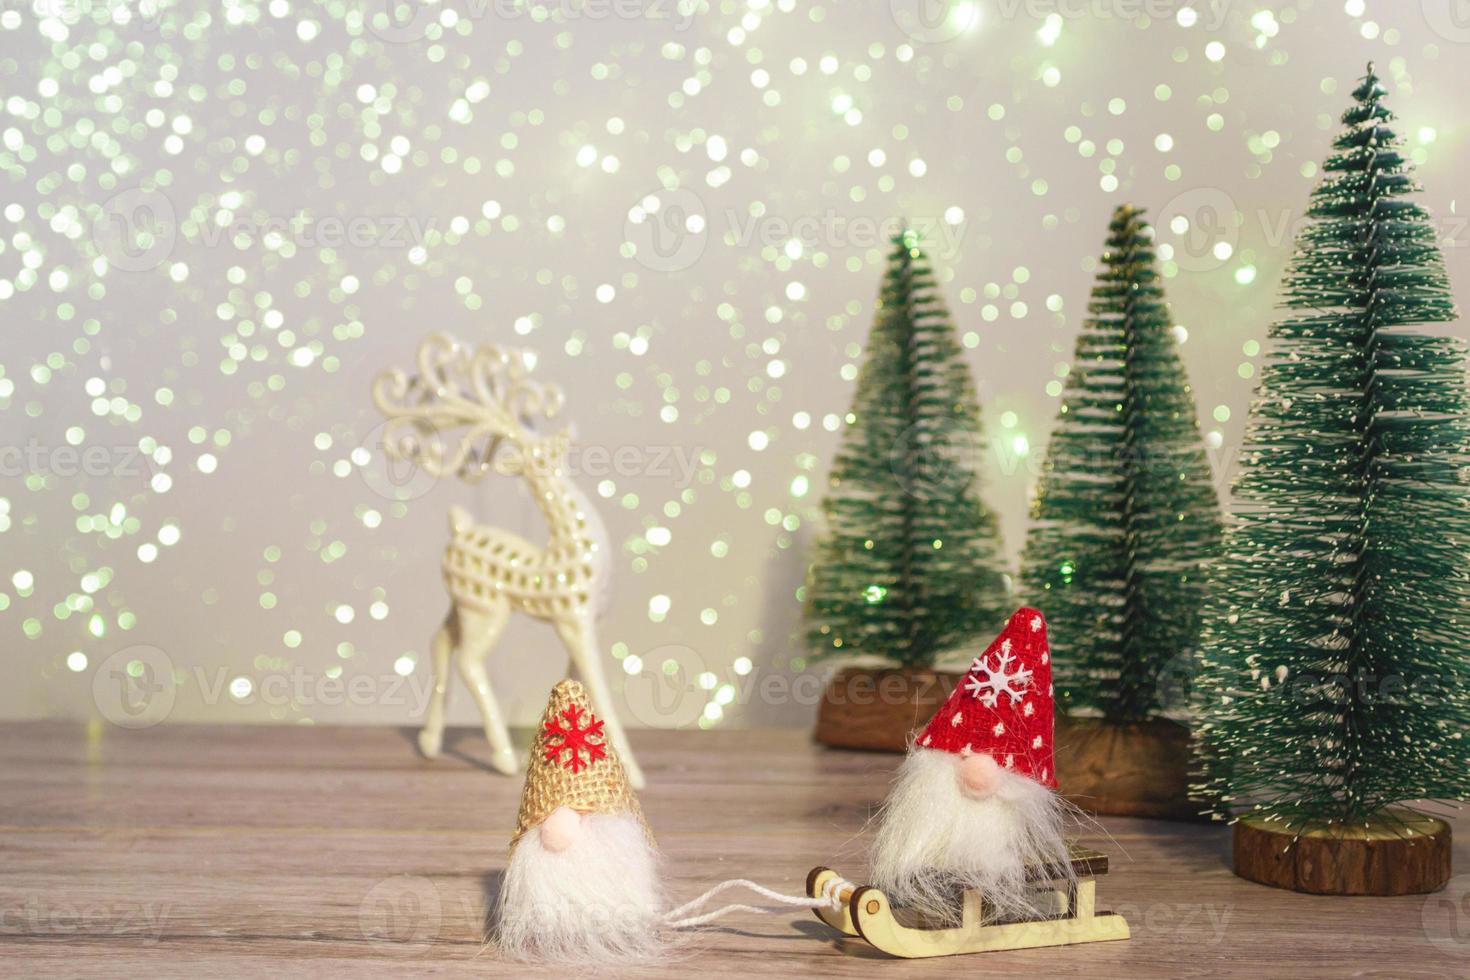 een kabouter met een witte hoed leidt een kabouter met een rode hoed op een slee. winter achtergrond kerstbomen in sparkles en een hert. fijne vakantie. foto